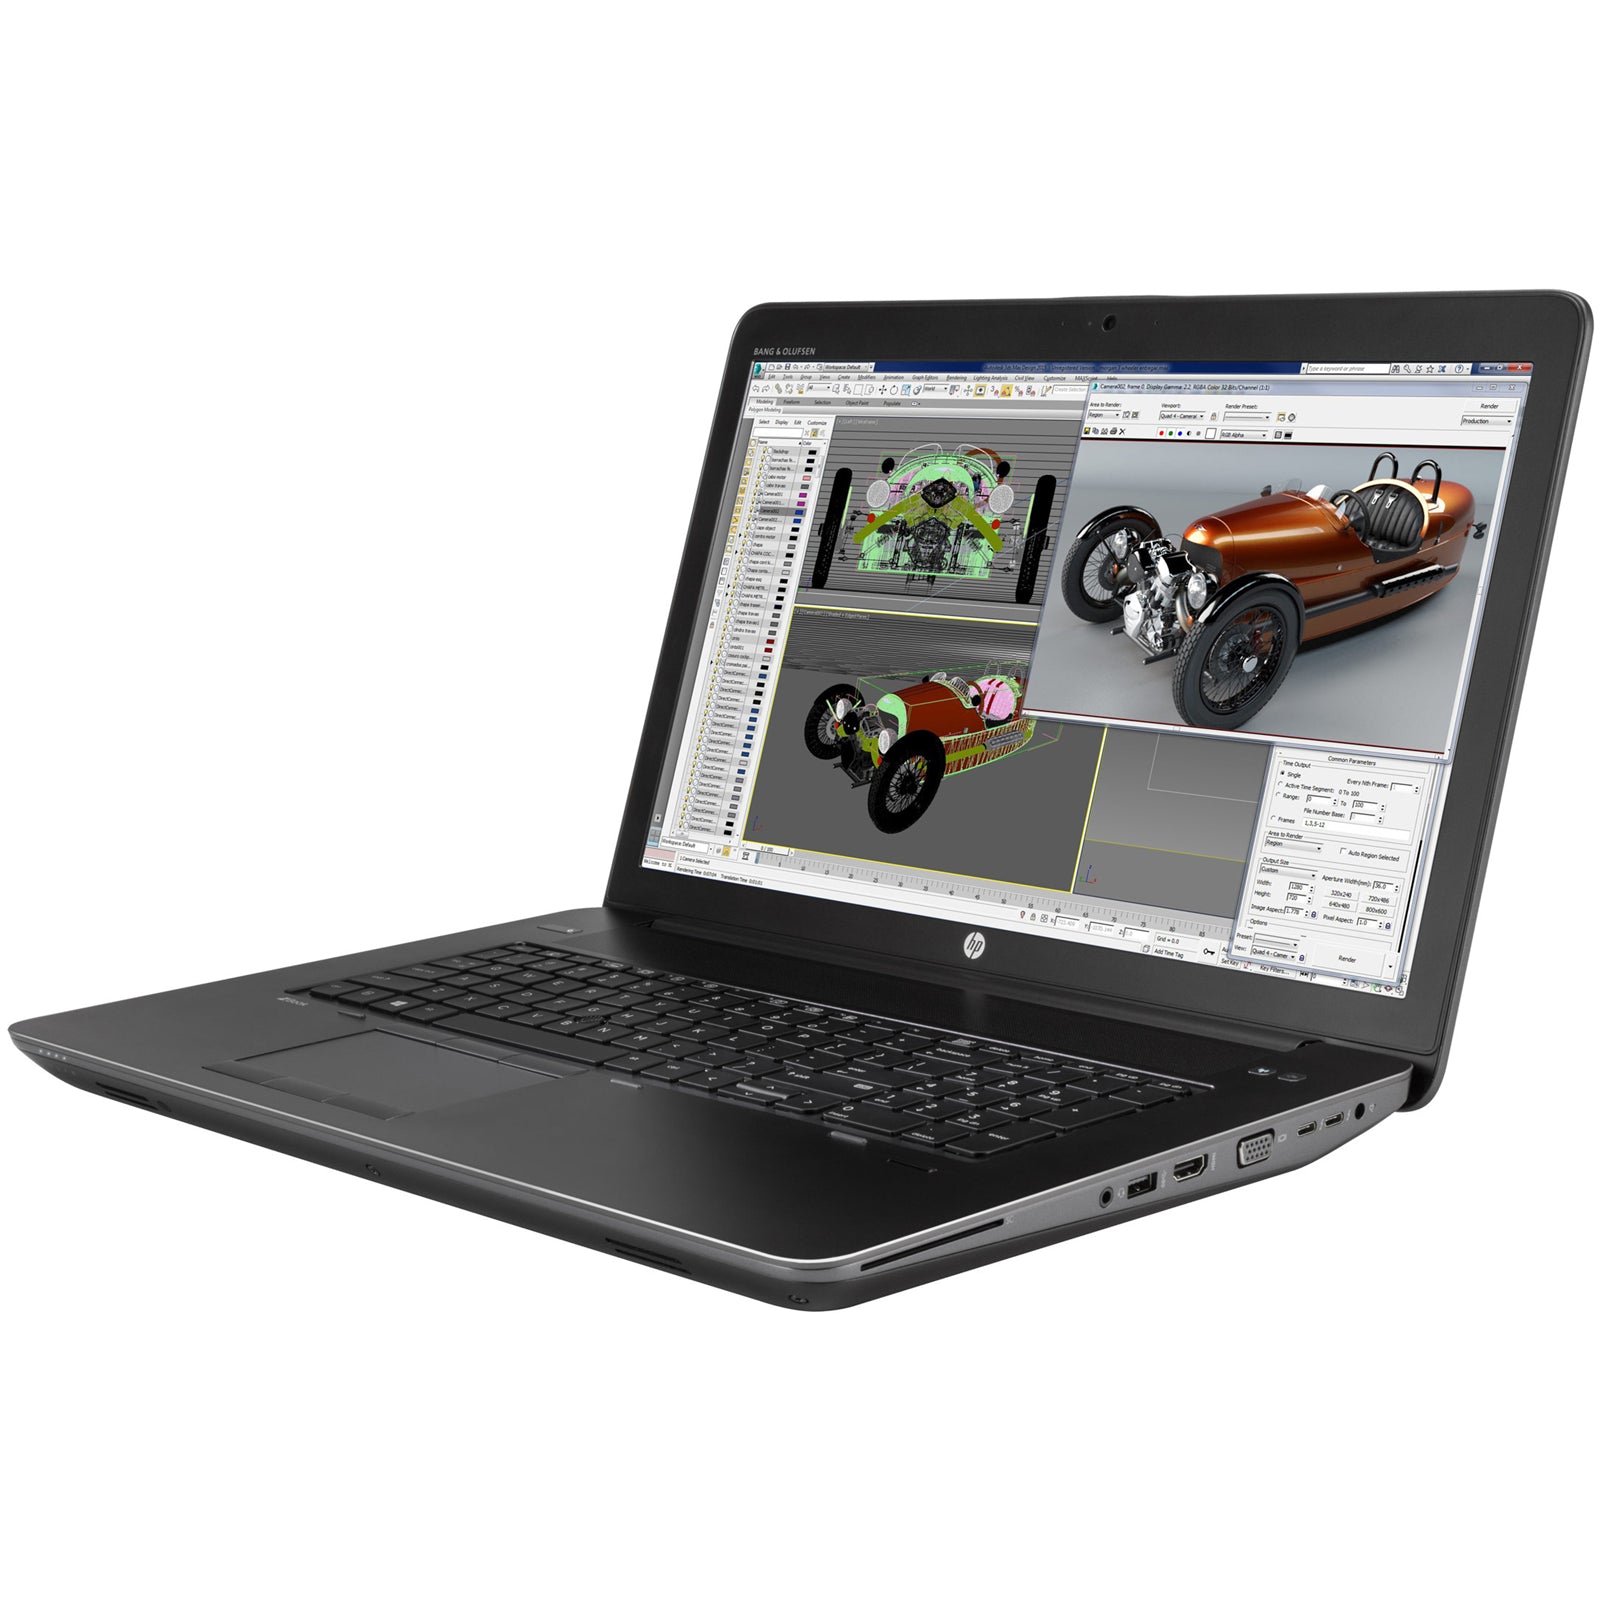 Notebook ricondizionato - Grado A - Notebook PC Portatile Ricondizionato HP Workstation ZBook 17 G3 17.3" Intel i5-6440HQ Ram 16GB SSD 512GB Webcam Freedos - Disponibile in 2-4 giorni lavorativi